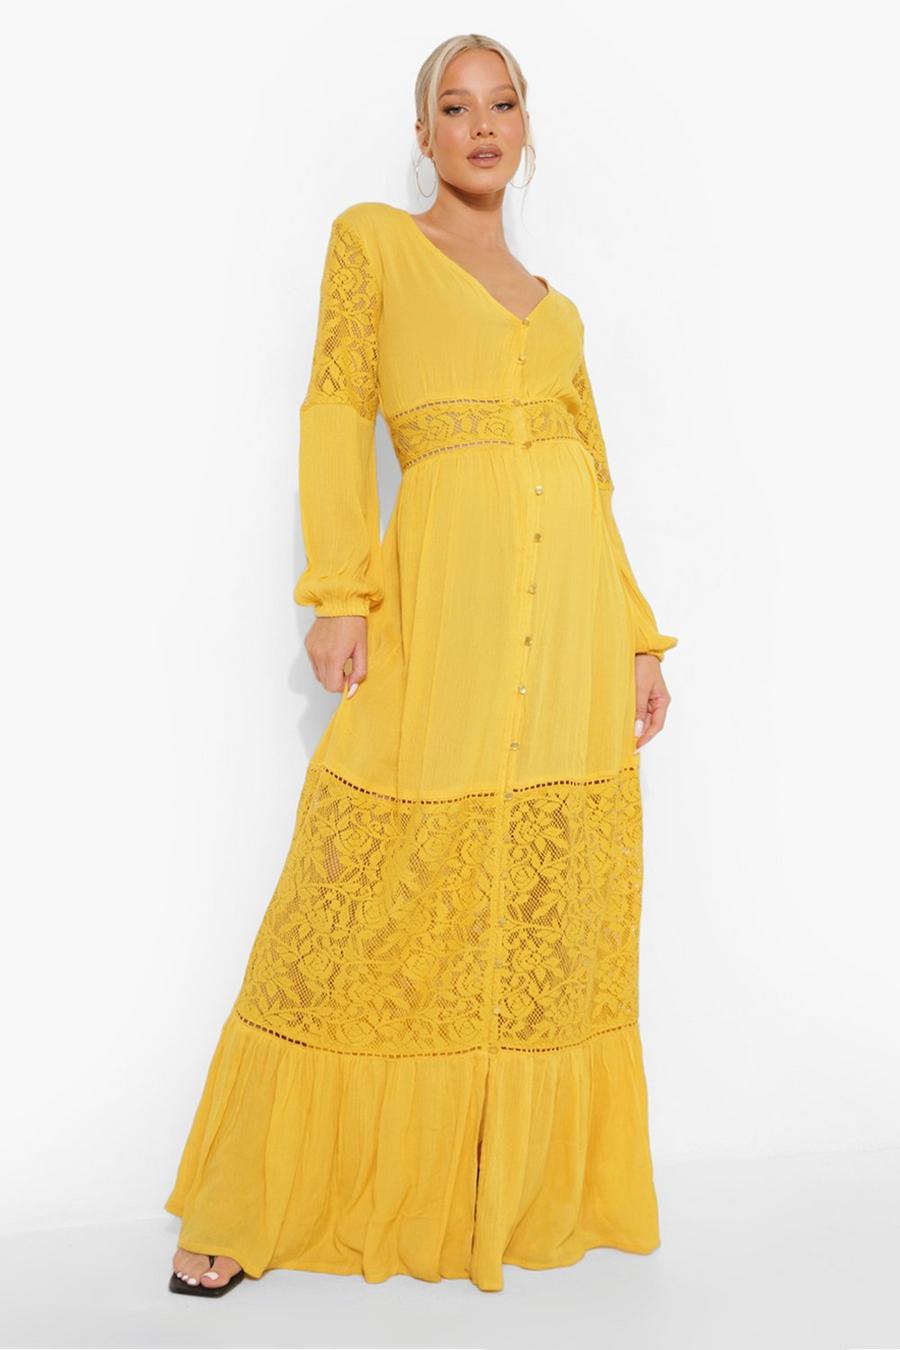 Ochre yellow Maternity Boho Lace Insert Maxi Dress